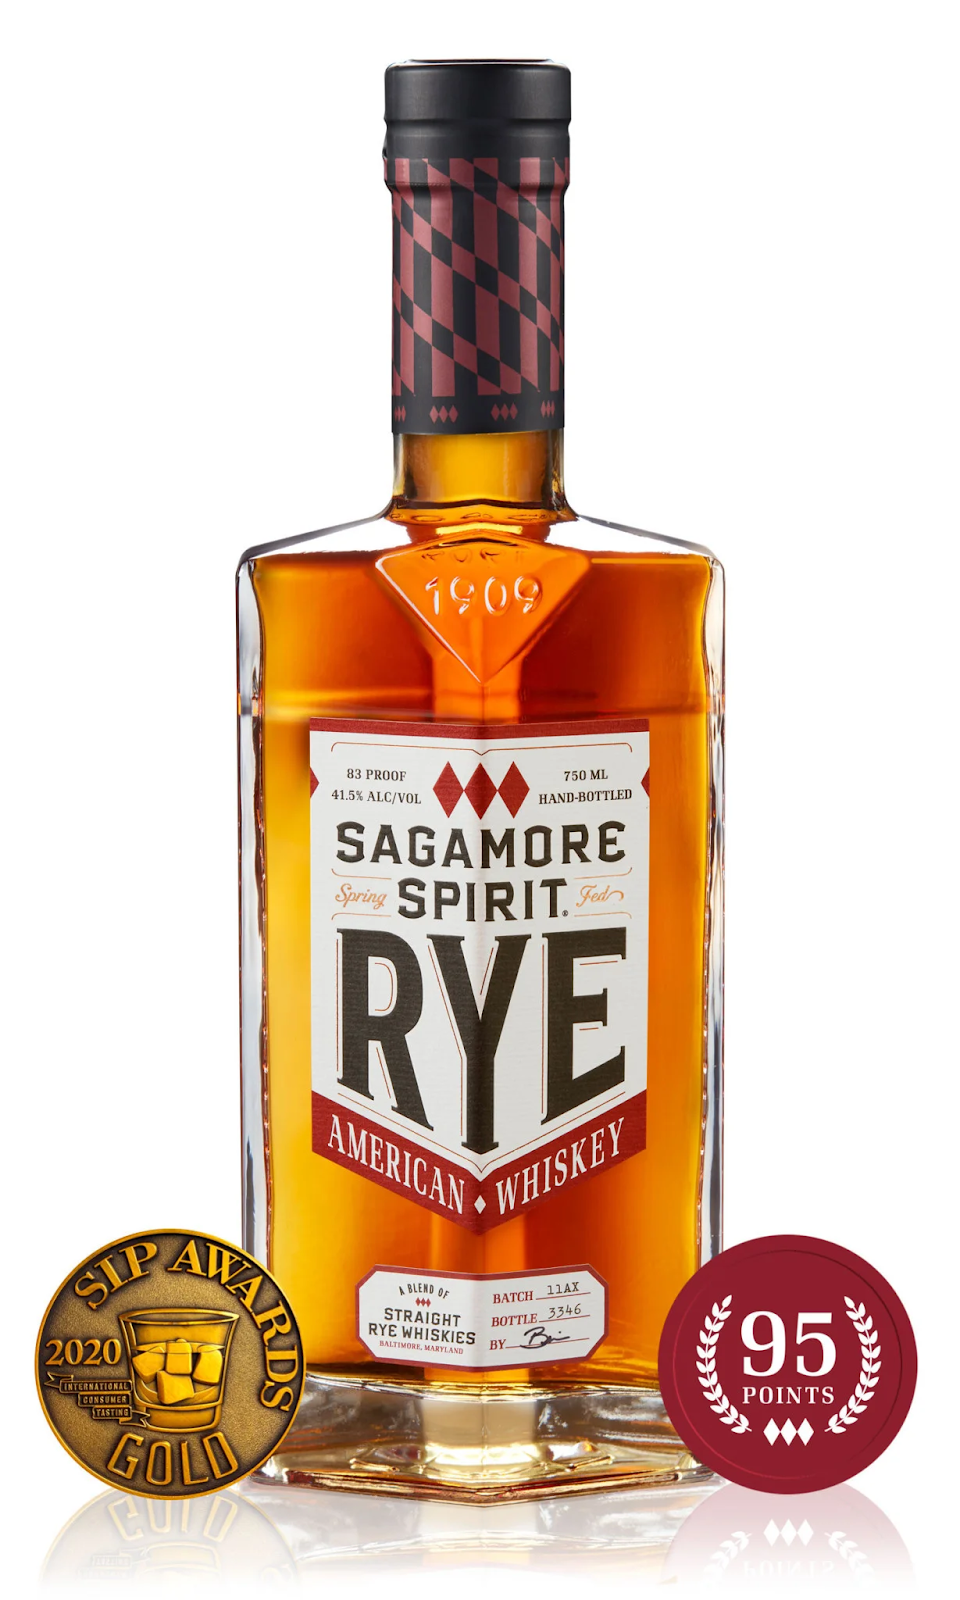 Best Rye Whiskey from Sagamore Spirit